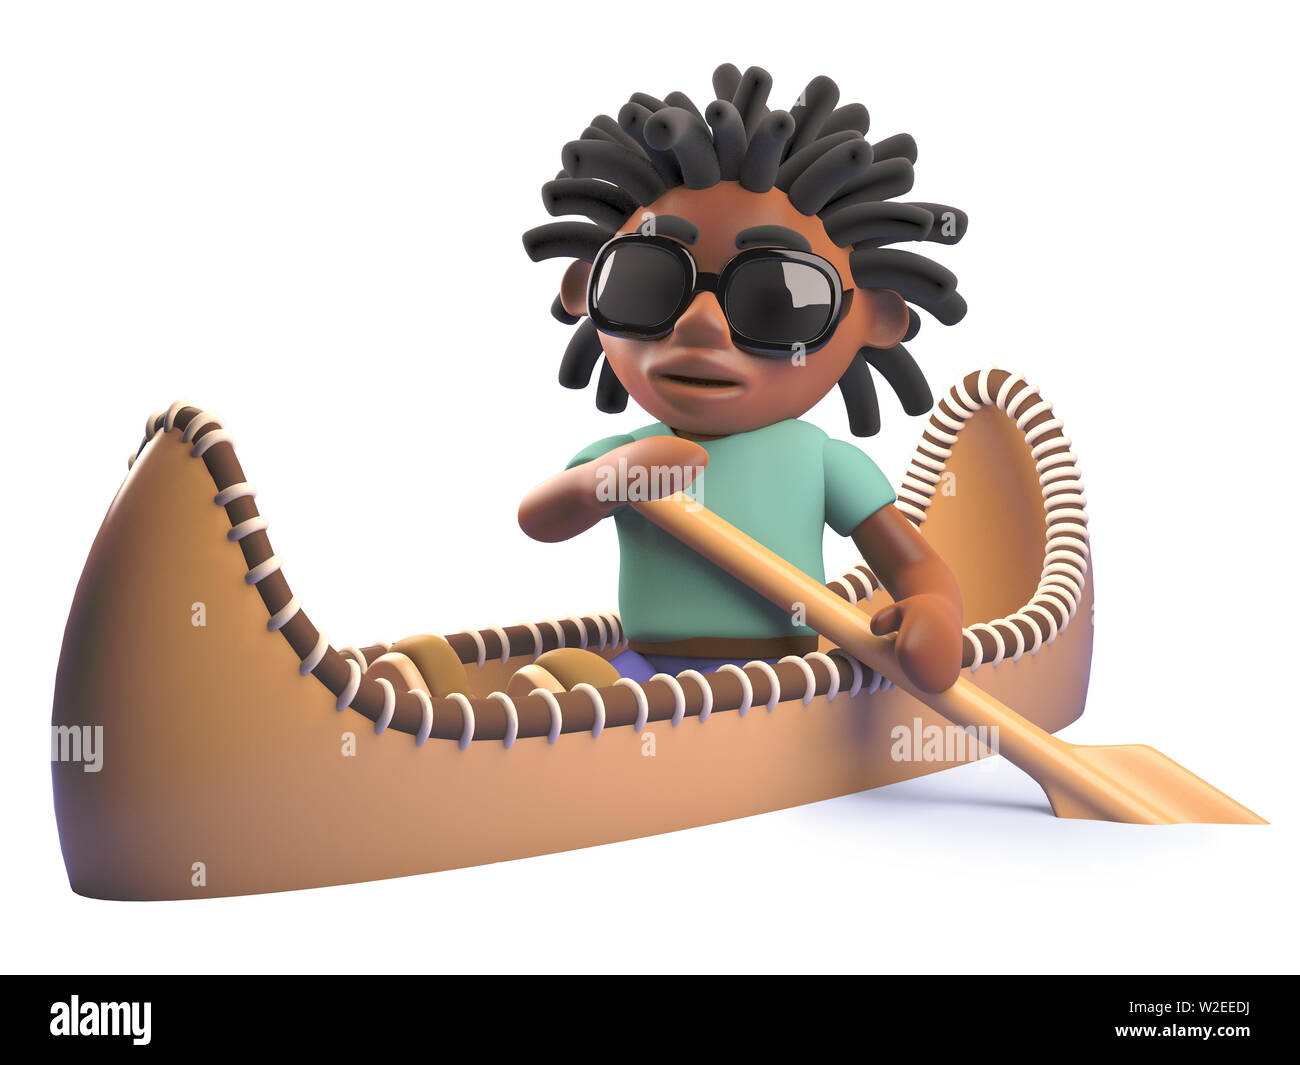 Imagen presentada de una caricatura negro hombre rastafari remando un kayak canoa, ilustración 3d Foto de stock